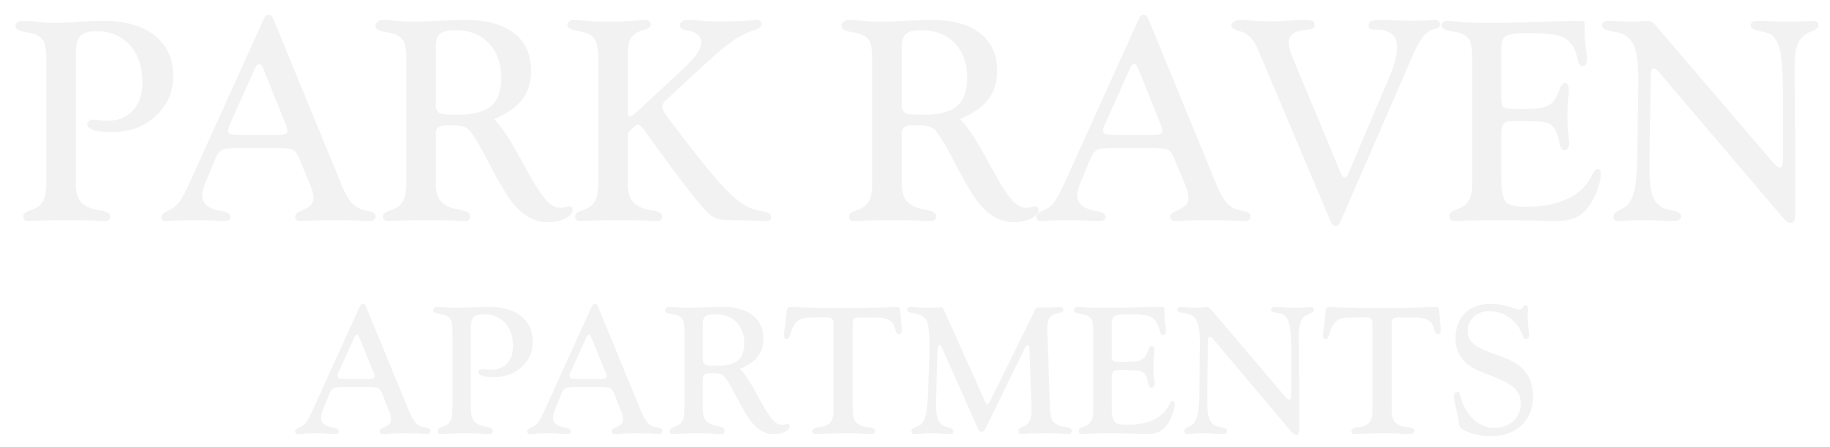 Park Raven Apartments ebrochure logo